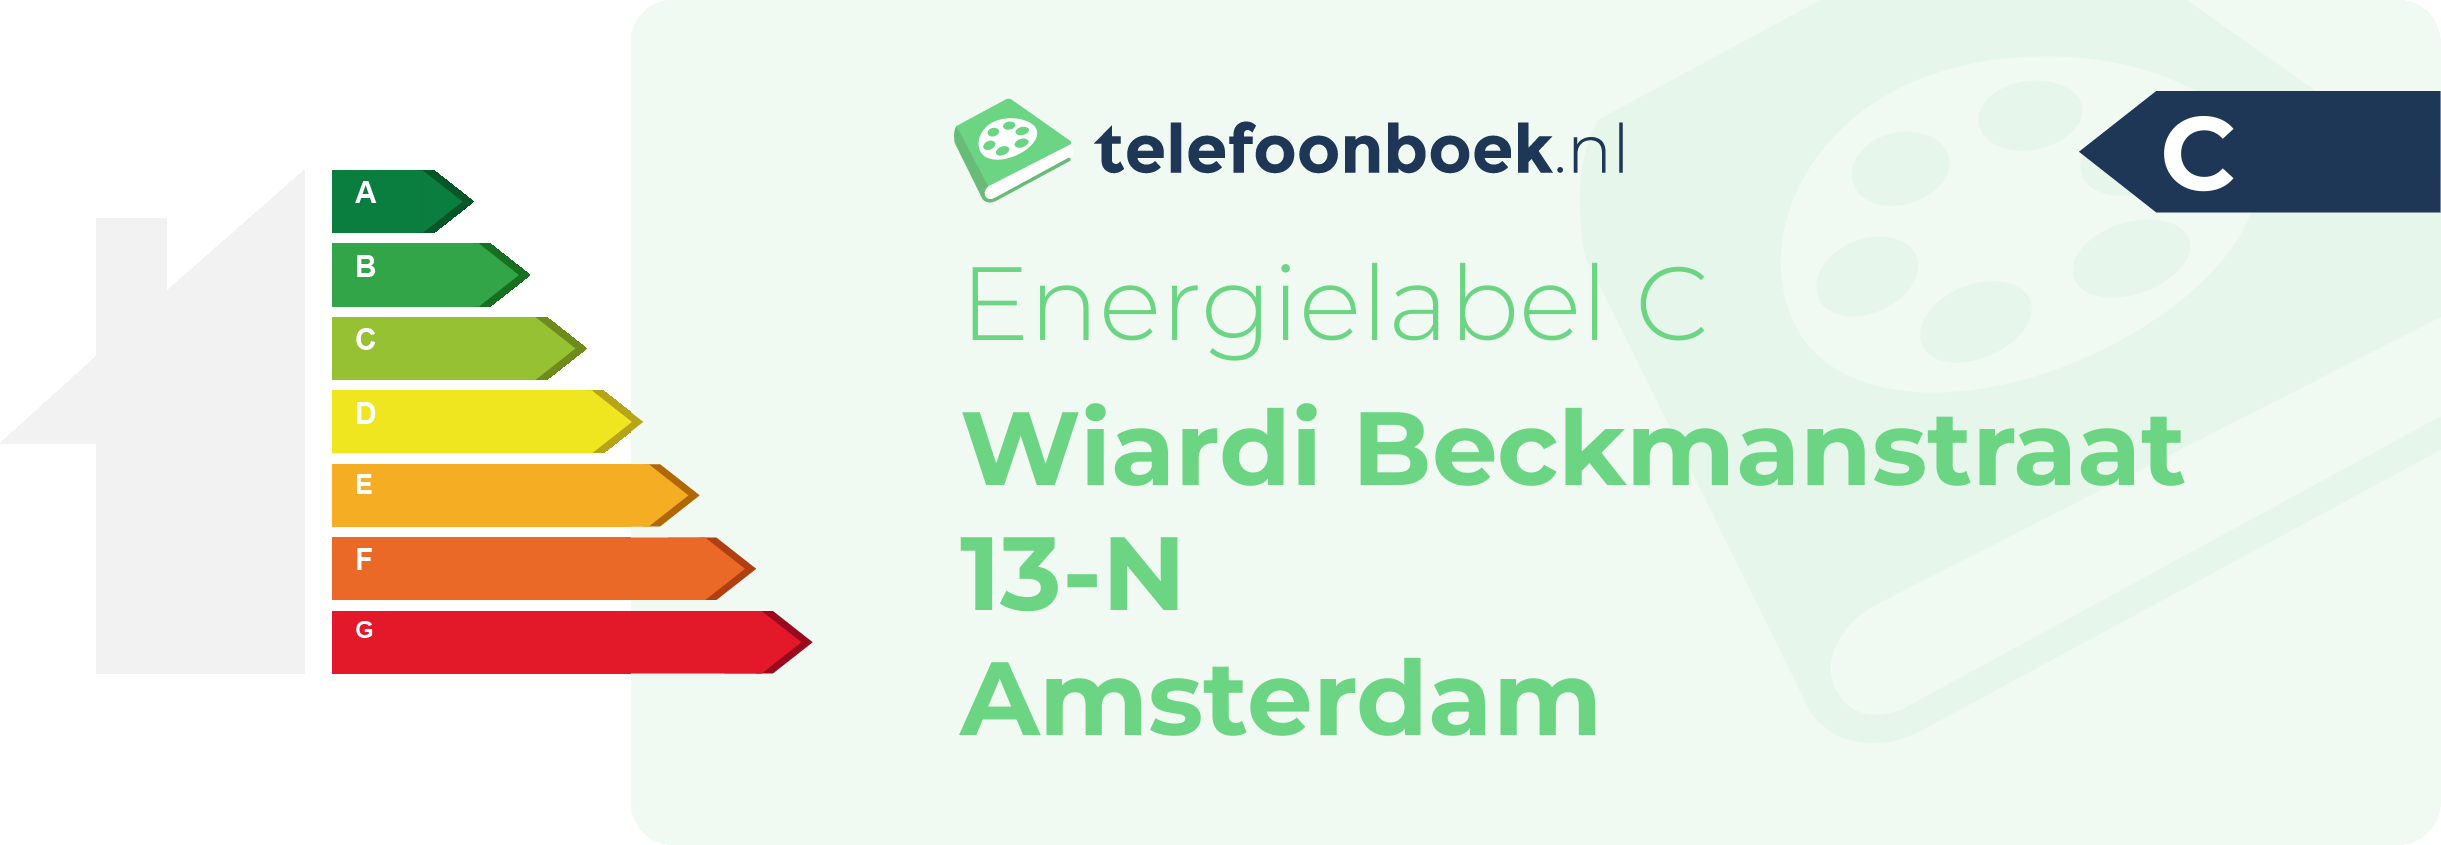 Energielabel Wiardi Beckmanstraat 13-N Amsterdam